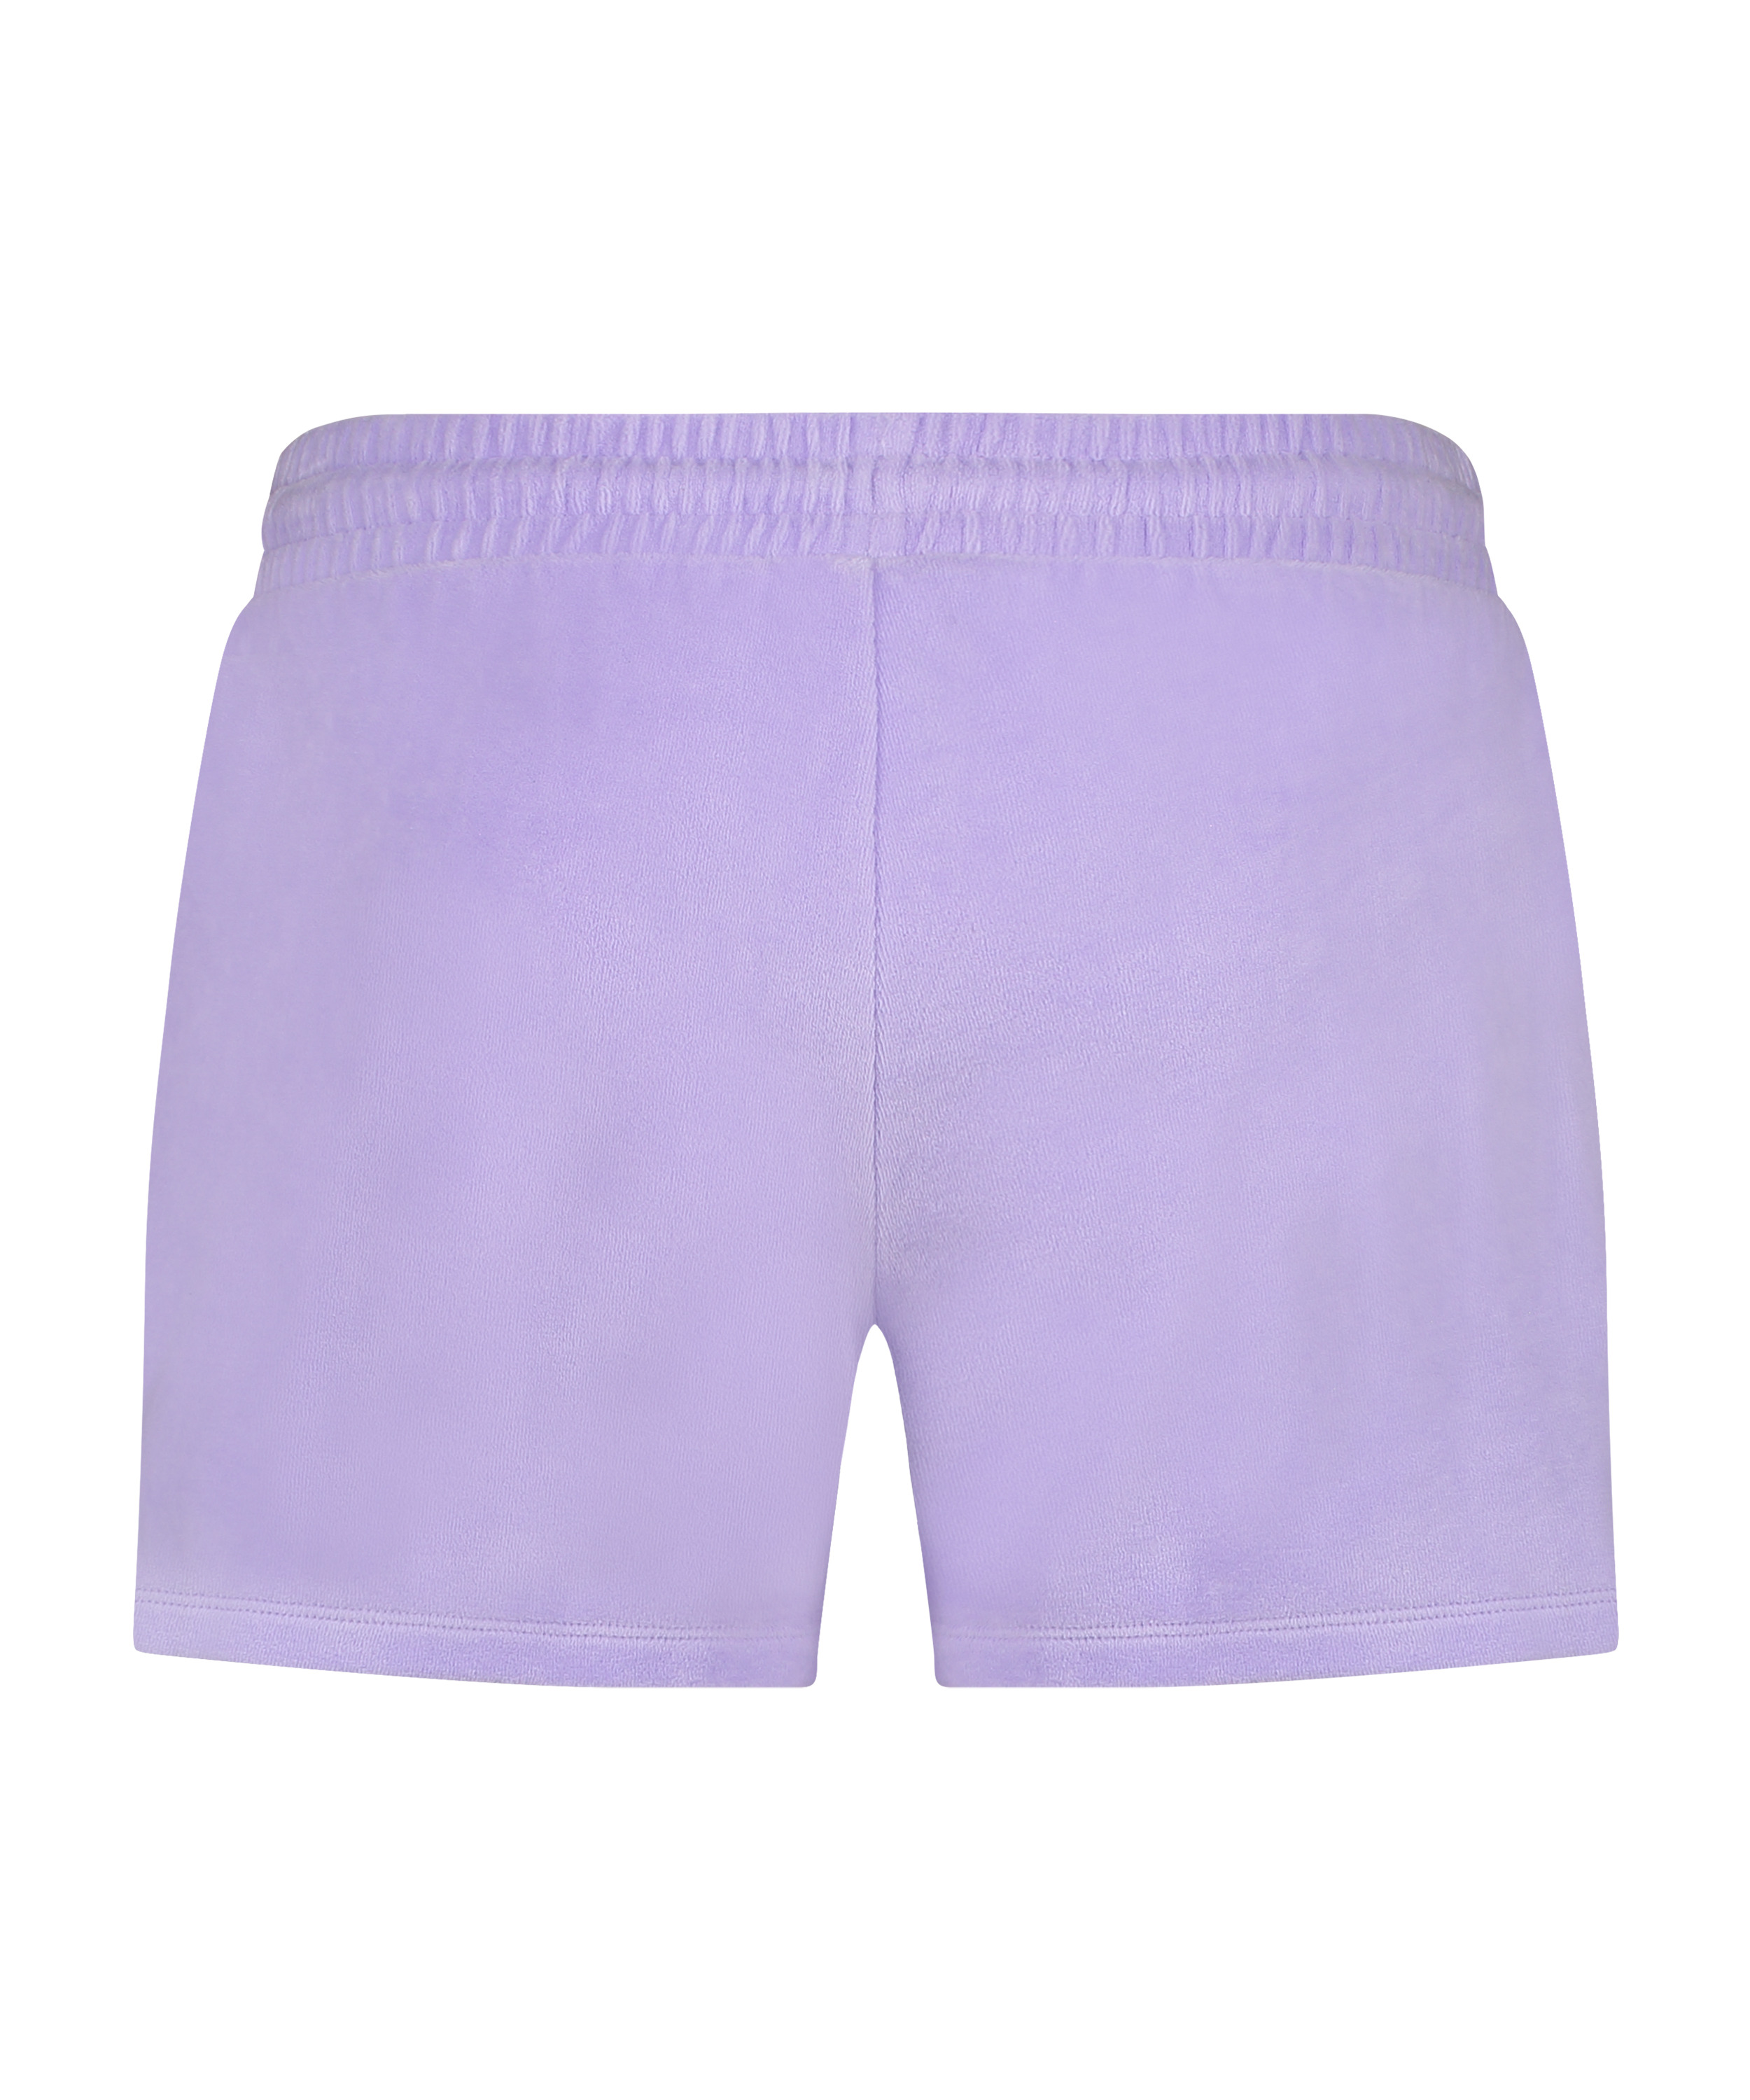 Velours Pocket shorts, Lilla, main